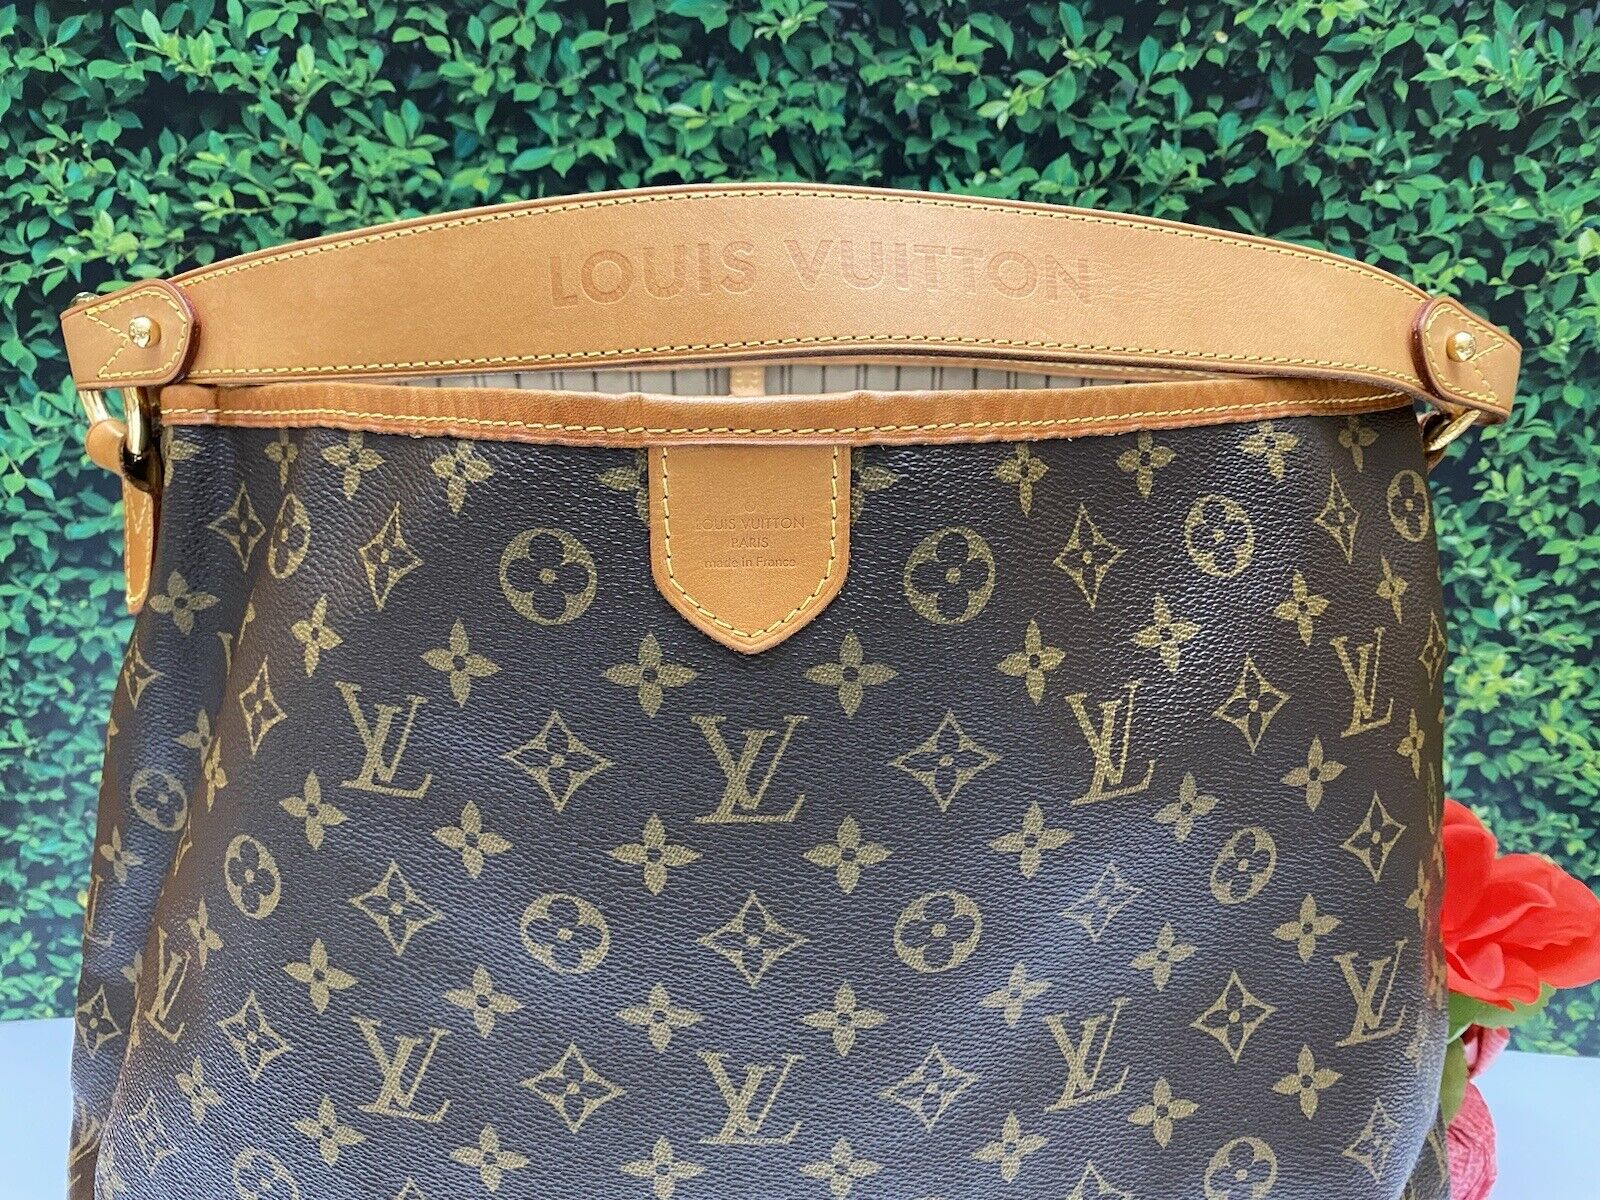 Louis Vuitton Delightful MM Monogram Shoulder Bag Purse with